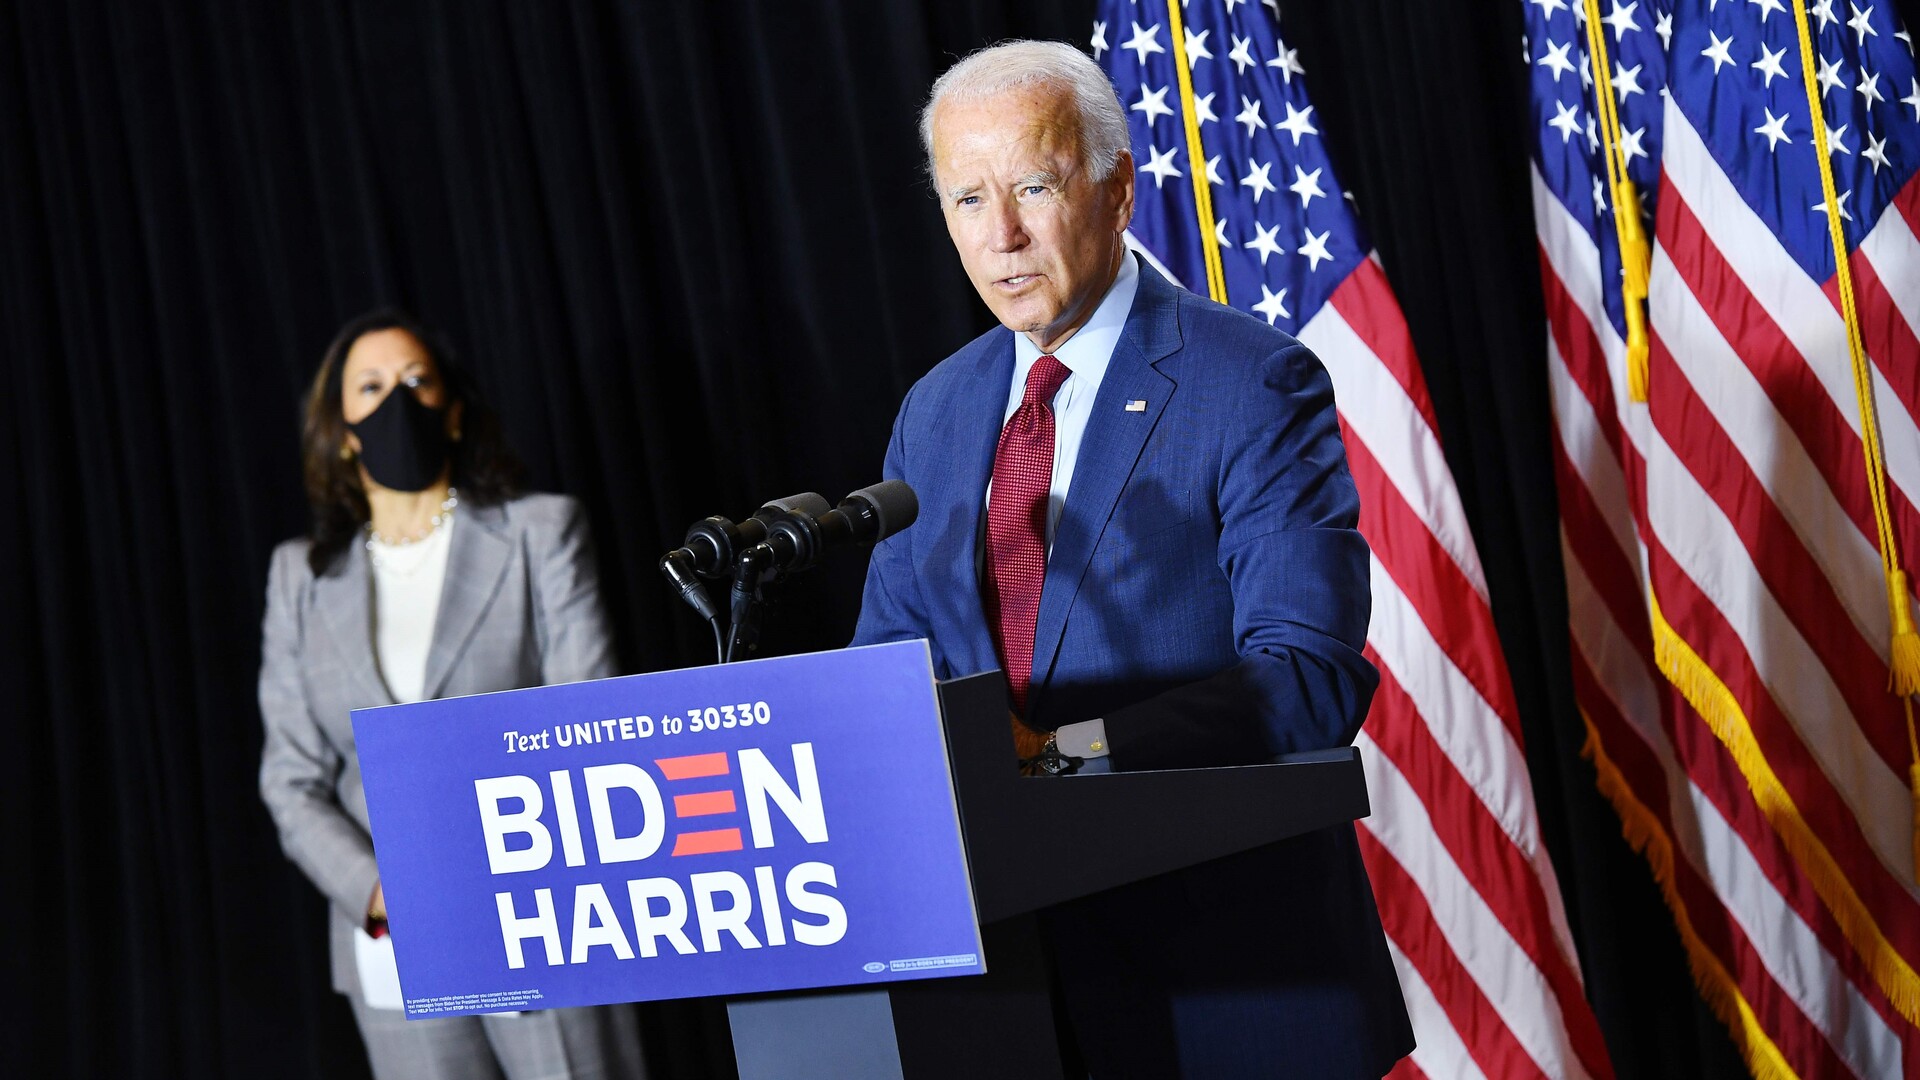 David Hopkins: I Biden ser vi den mest partiloyale Demokratiske kandidat siden Lyndon B. Johnson. Hans enorme venstresving og valg af Kamala Harris bekræfter det billede